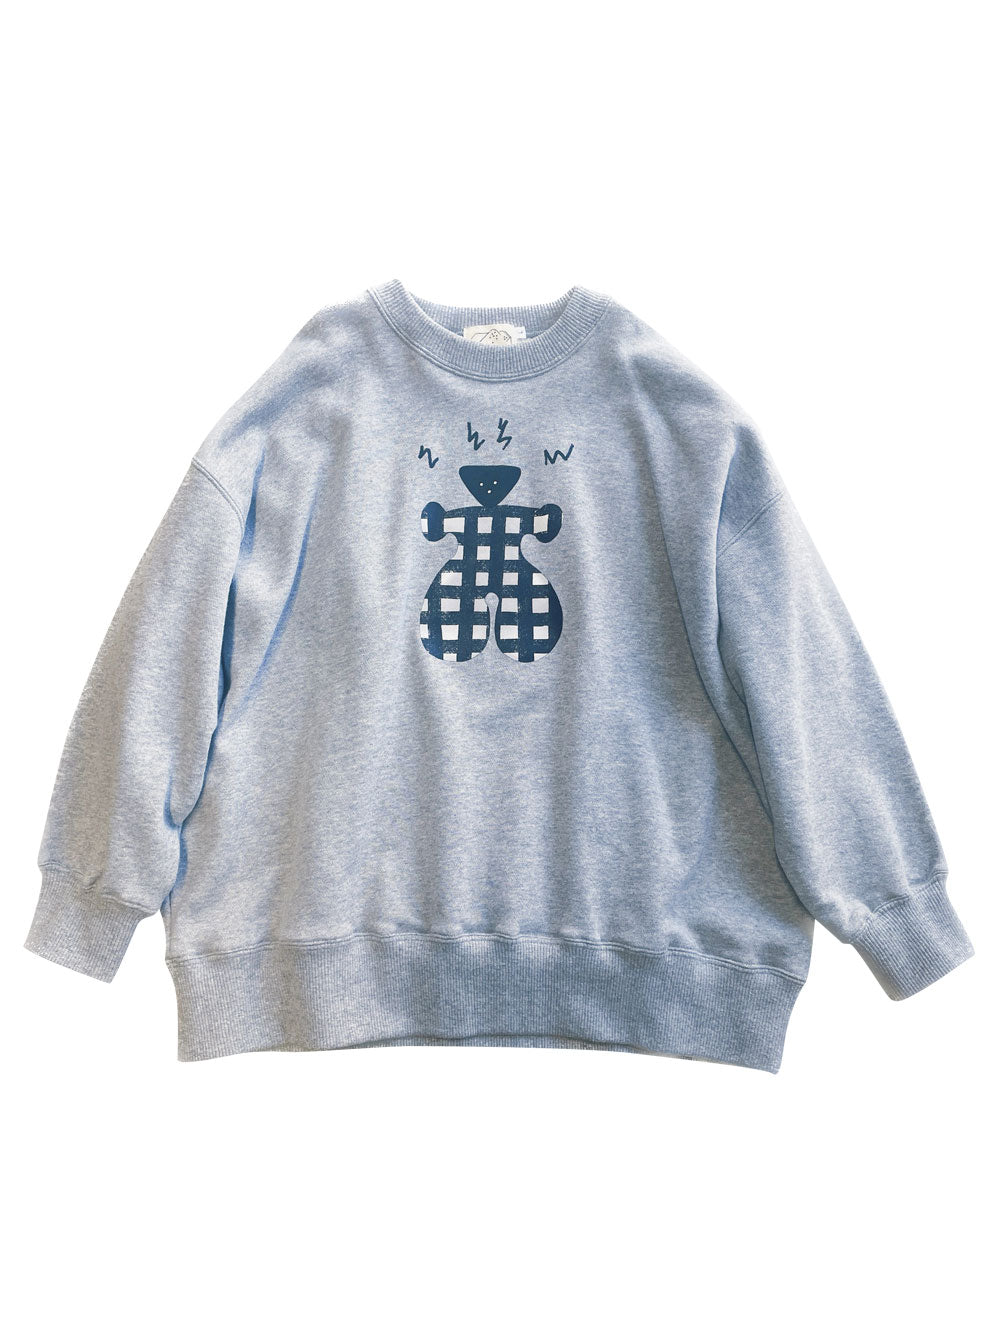 PREORDER: Swoon Grey Sweatshirt